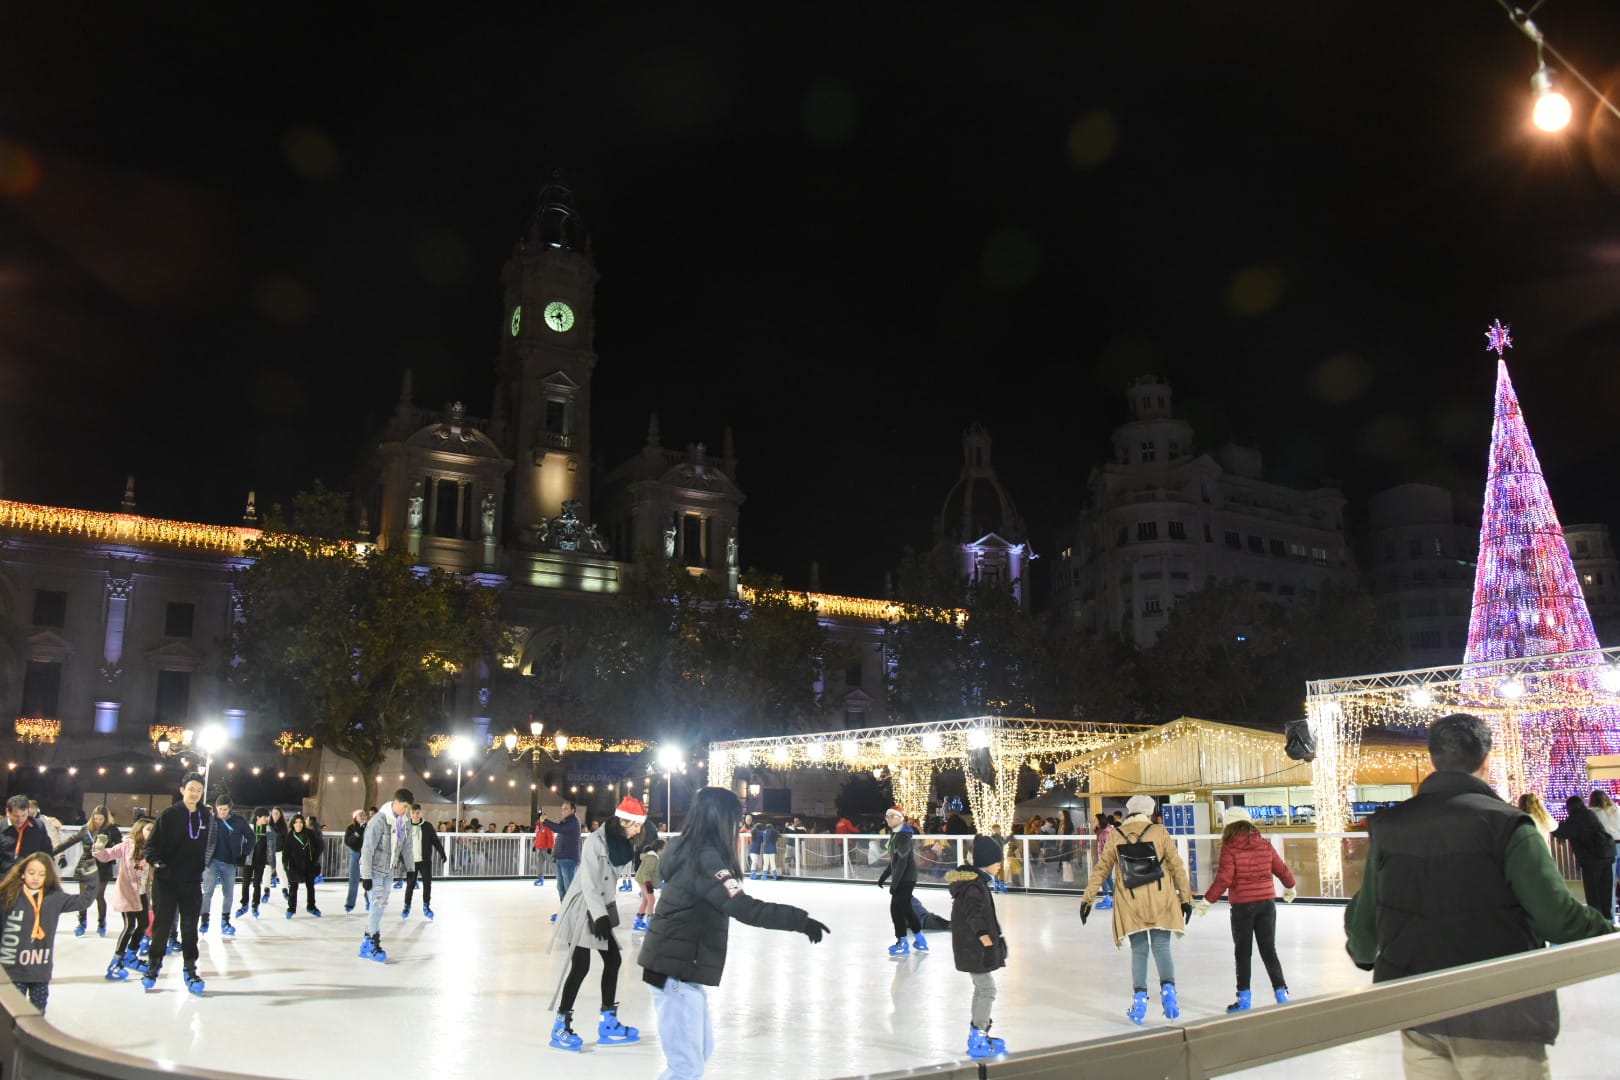 Pista de patinaje en la Plaza del Ayuntamiento de Valencia